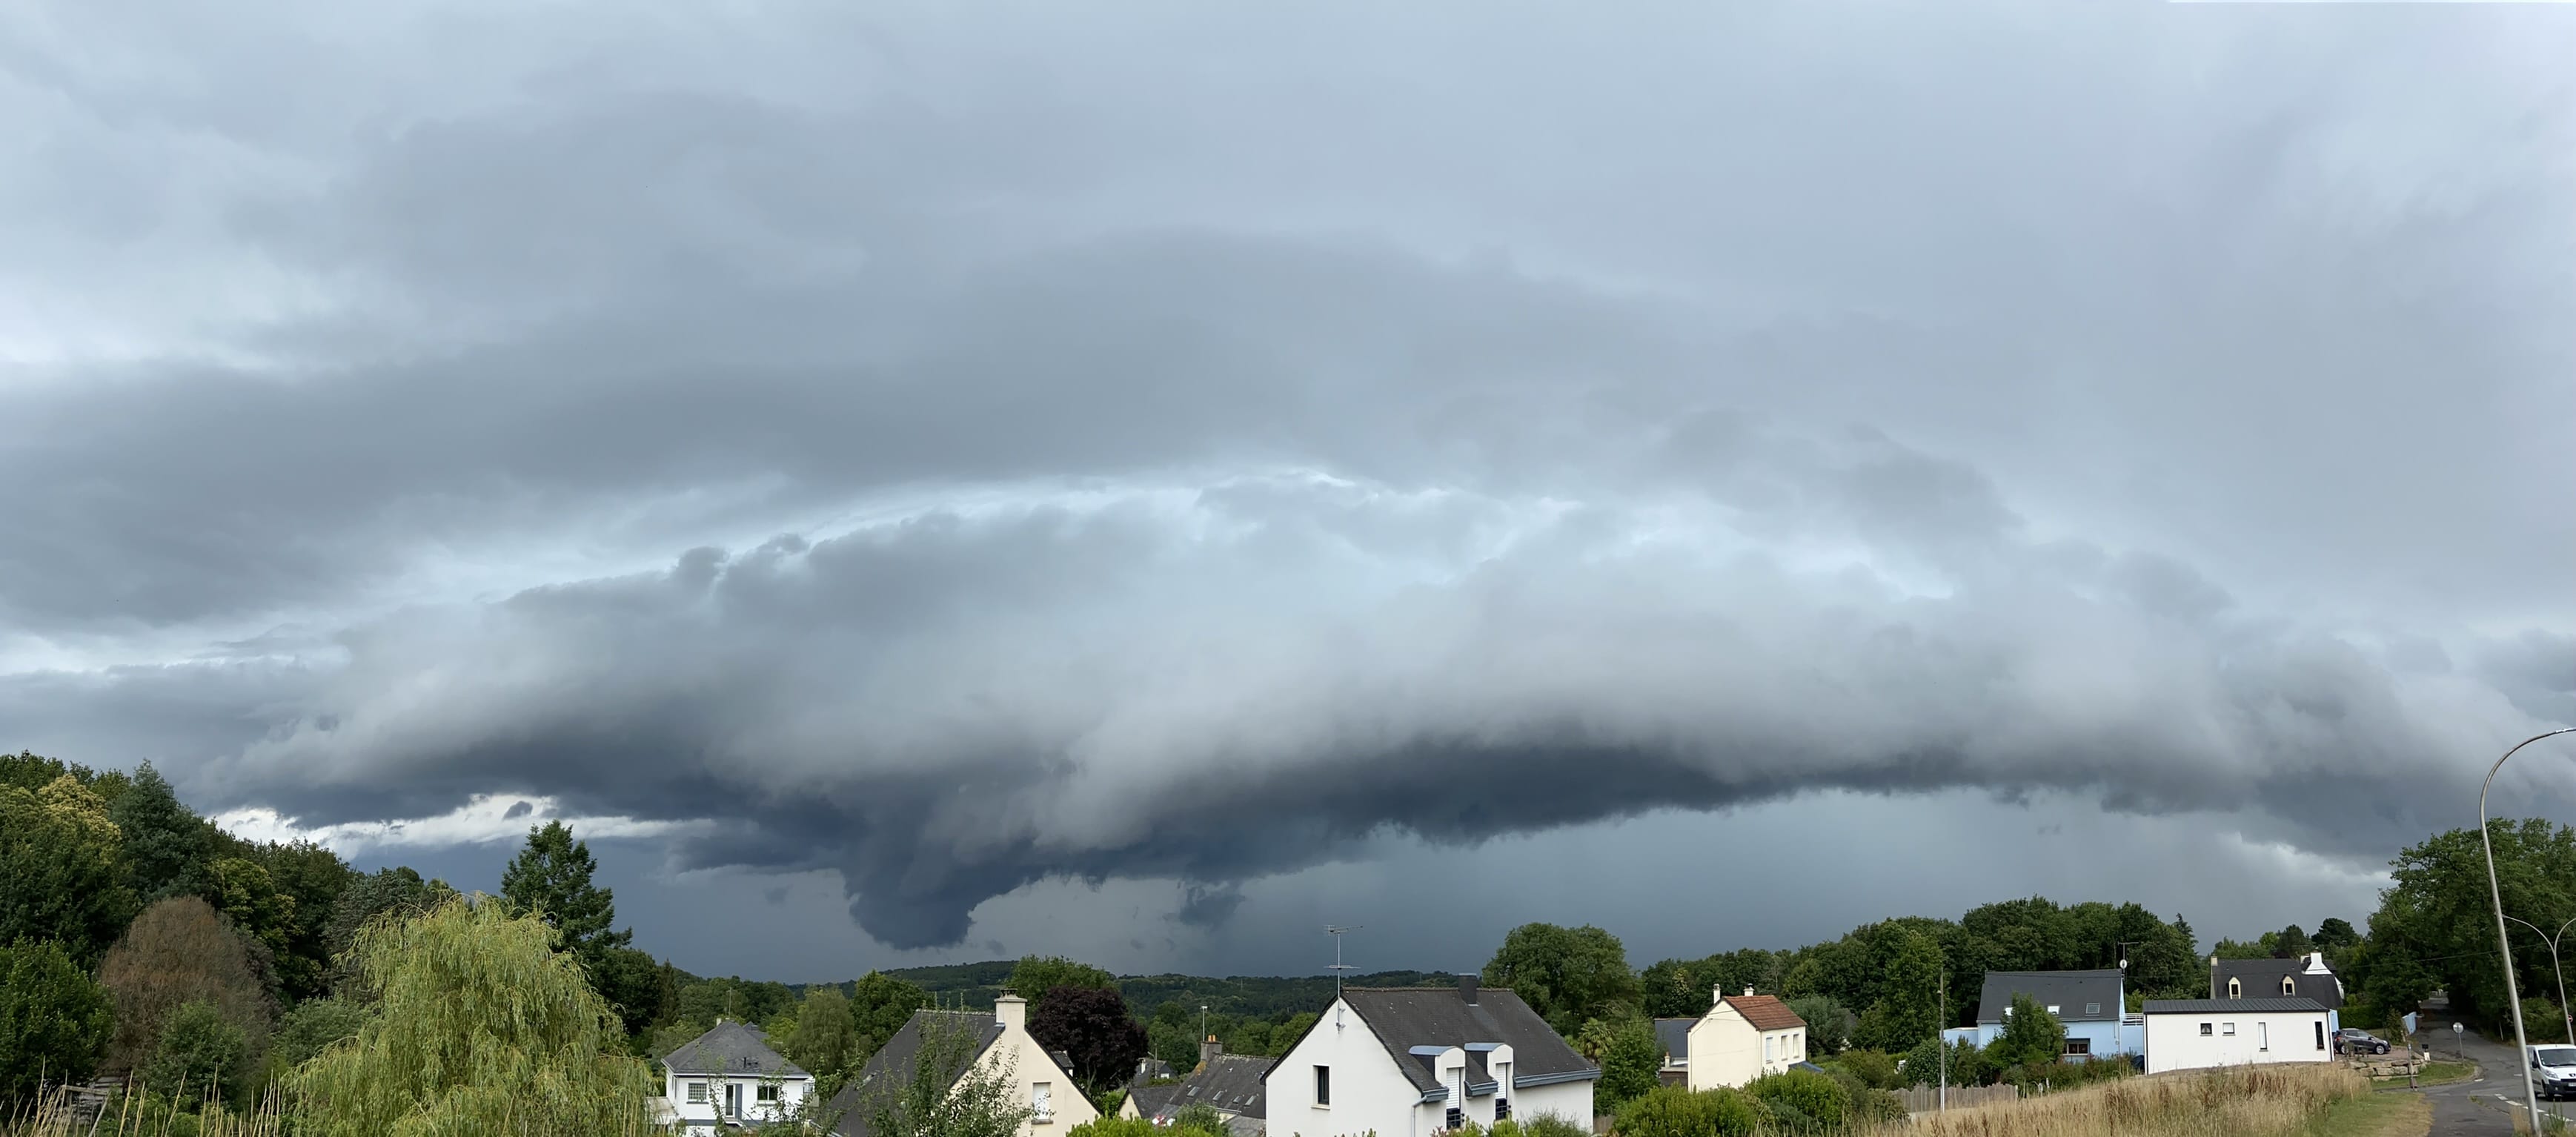 Arrivée d’une magnifique supercellule en Loire Atlantique, elle est accompagnée d’une forte intensité électrique et de pluies. - 21/06/2022 17:48 - Mathias Peltier